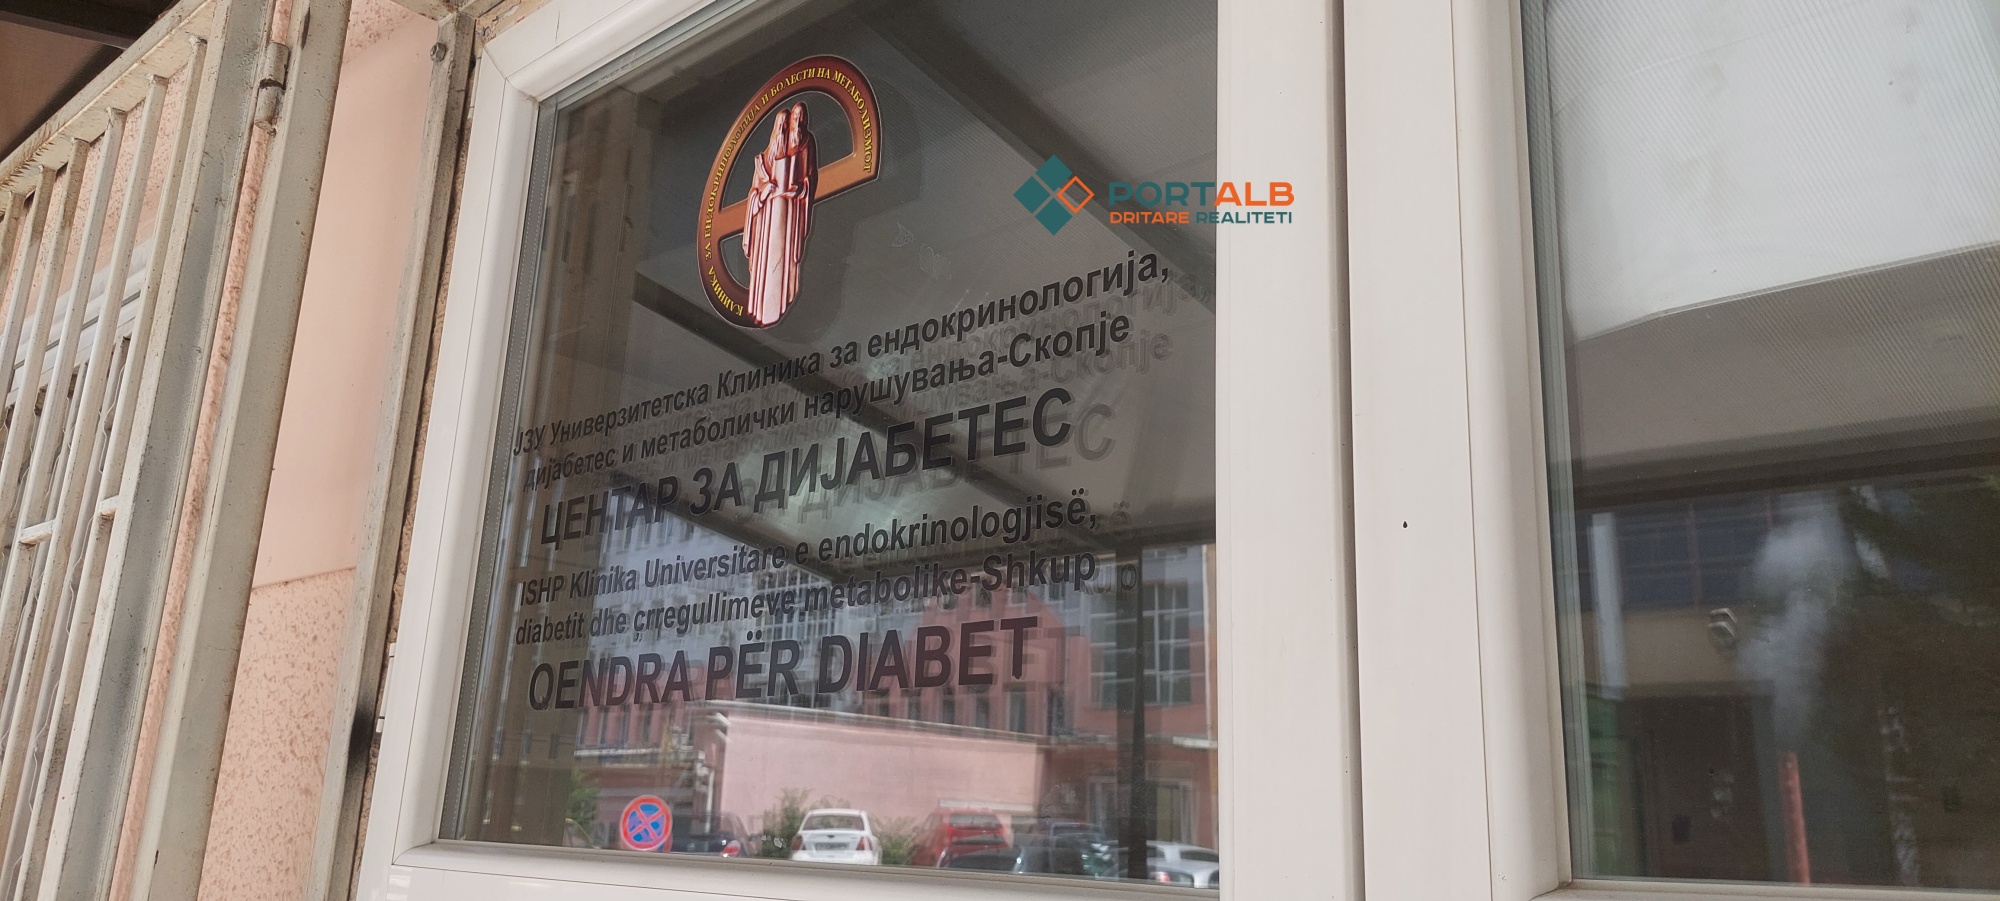 Qendra për Diabet në Klinikën universitare të endokrinologjisë, diabetit dhe çrregullimeve metabolike në Shkup. Foto nga Faton Curri Portalb.mk